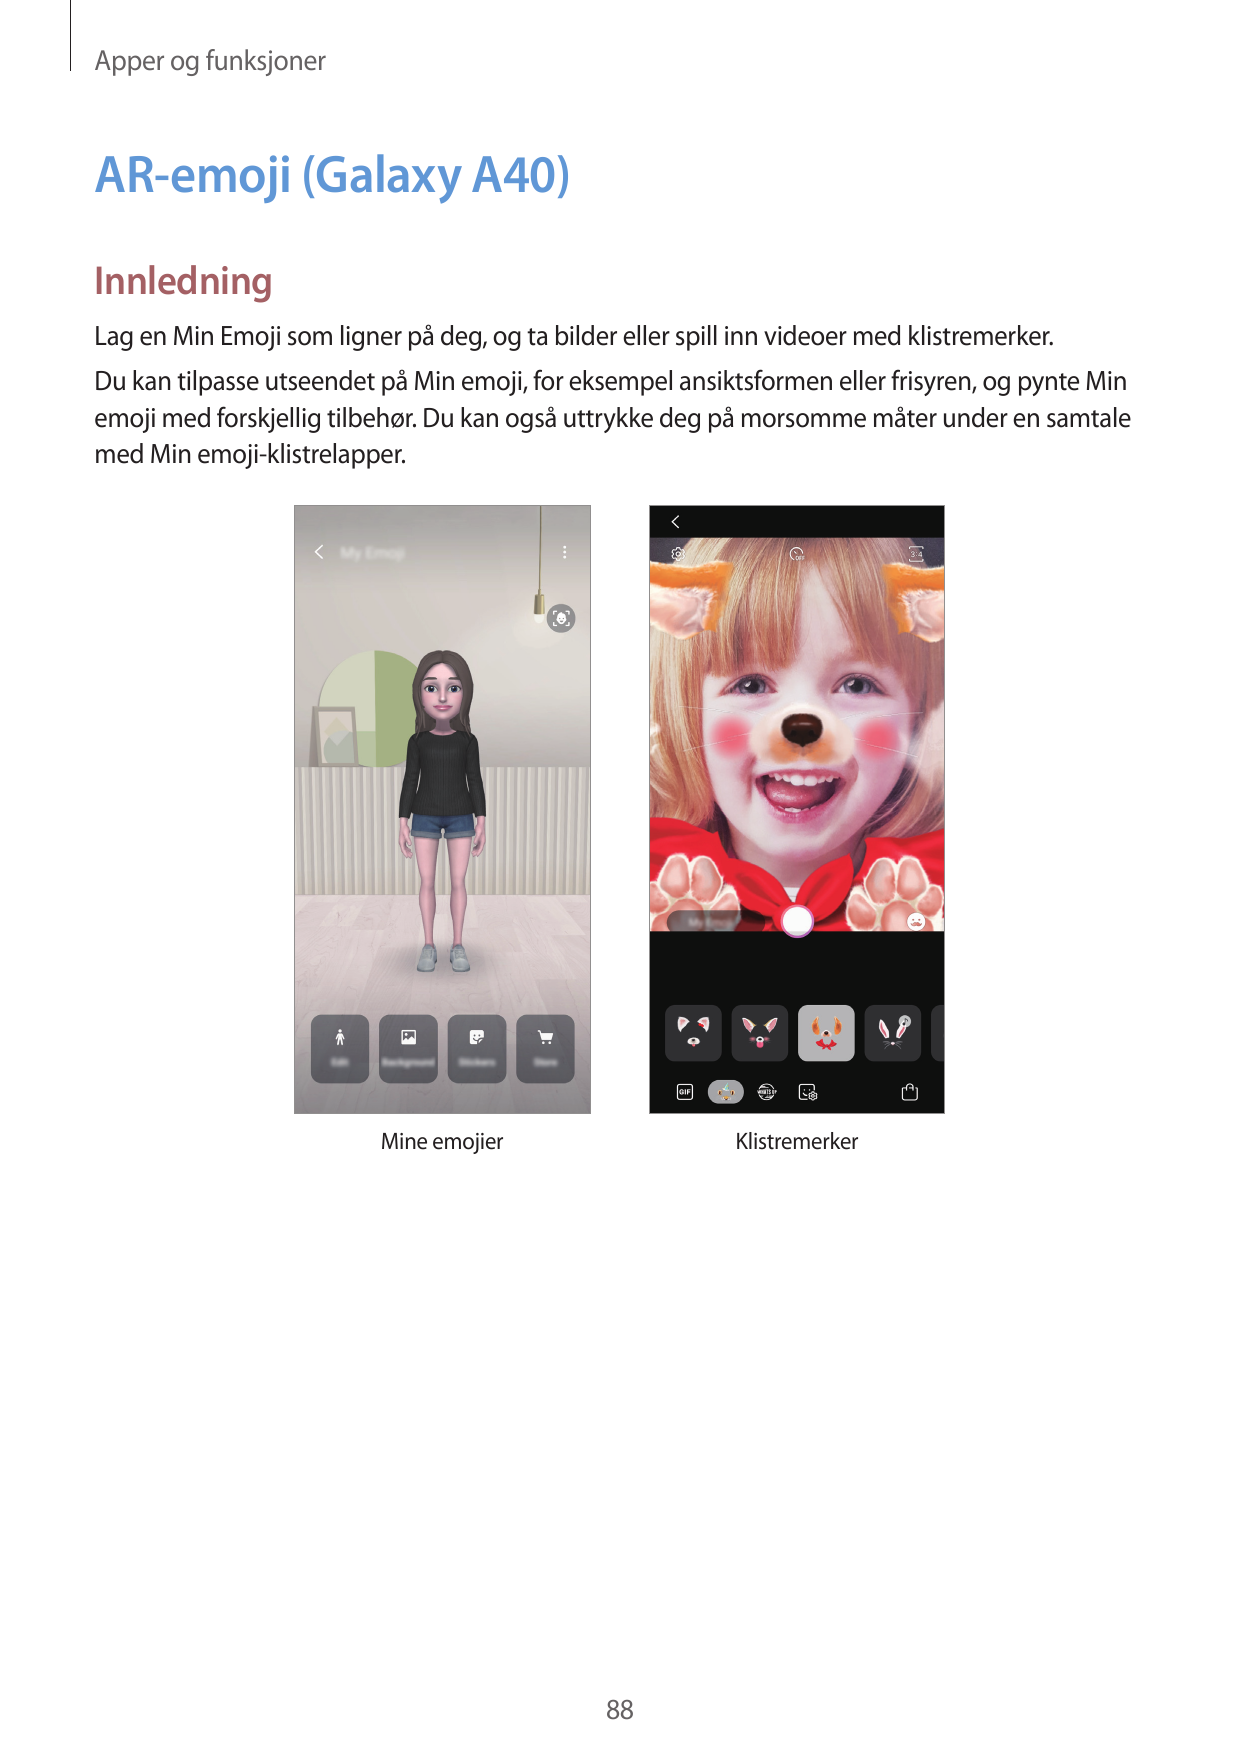 Apper og funksjonerAR-emoji (Galaxy A40)InnledningLag en Min Emoji som ligner på deg, og ta bilder eller spill inn videoer med k